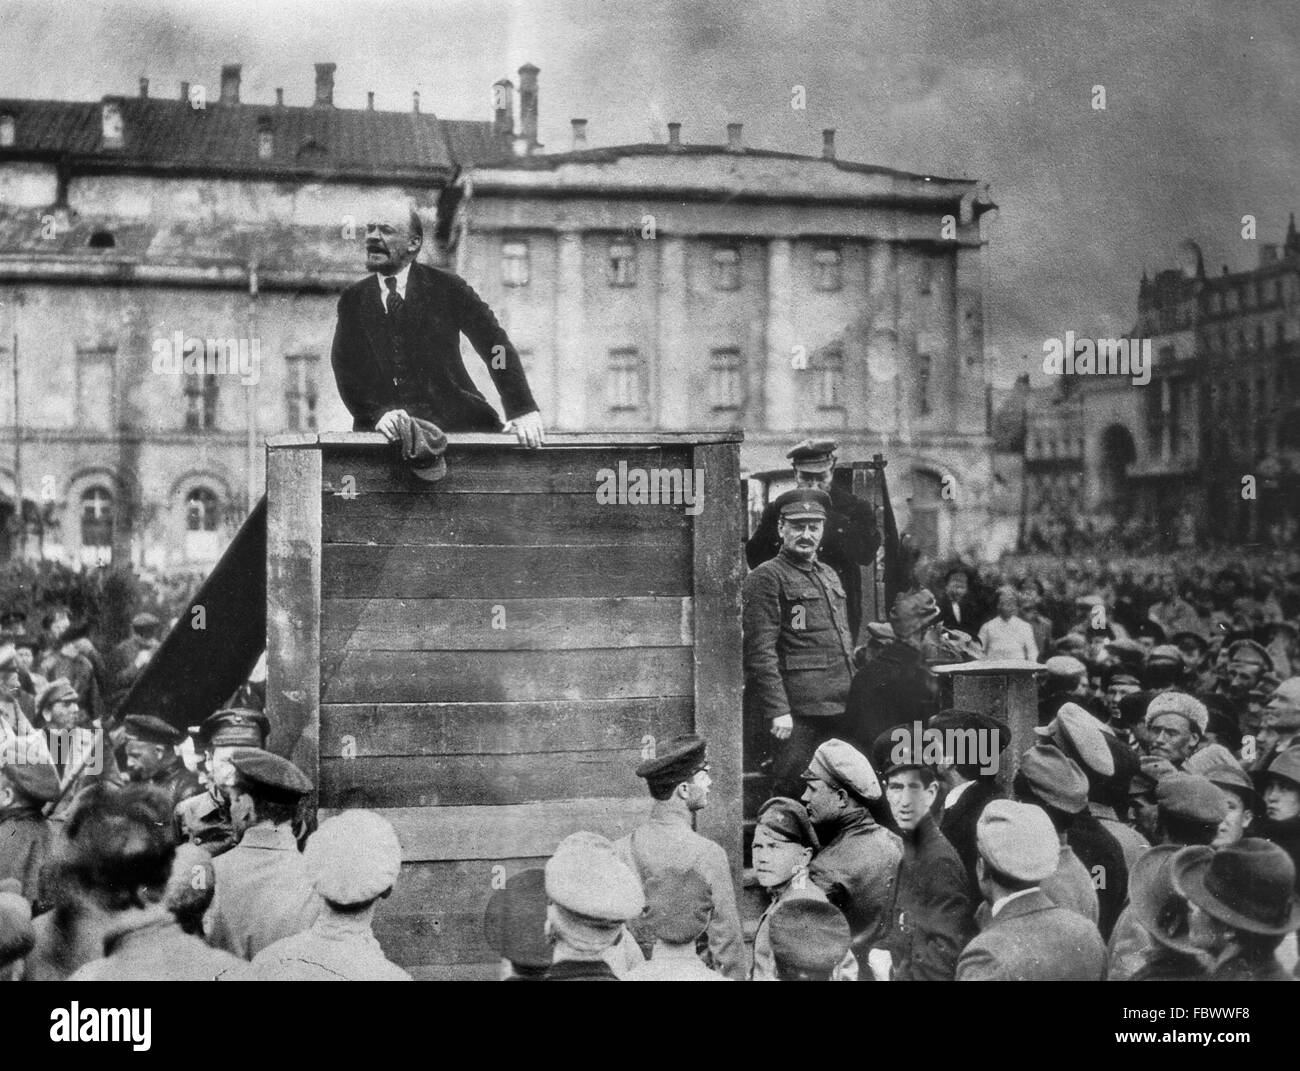 Discours de Lénine. Vladimir Lénine aborder une foule de soldats sur le point d'aller à la guerre en Pologne dans la guerre russo-polonaise (1919-21), Sverdlov Square (maintenant place du théâtre/Tetrainaya Square), Moscou, 5 mai 1920. Leon Trotsky est sur le podium à gauche de Lénine. Banque D'Images